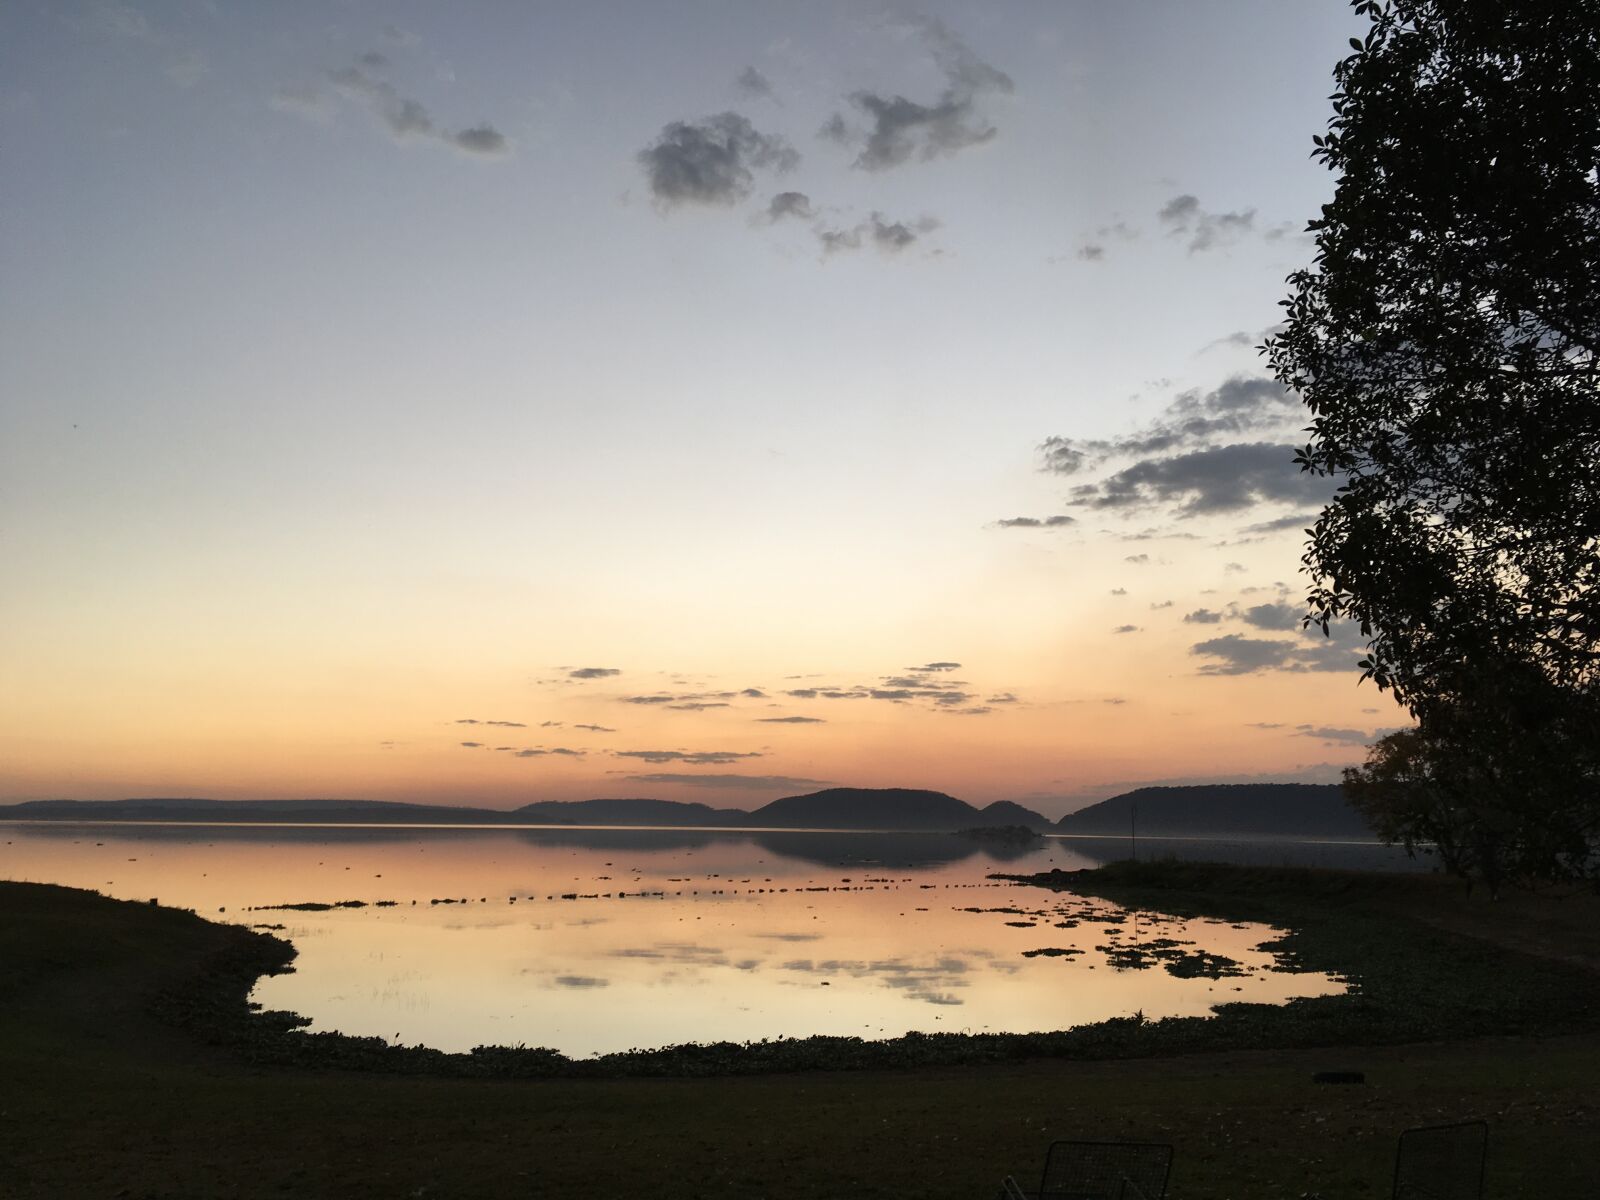 Apple iPhone SE sample photo. Dawn, lake, reflection, sunrise photography